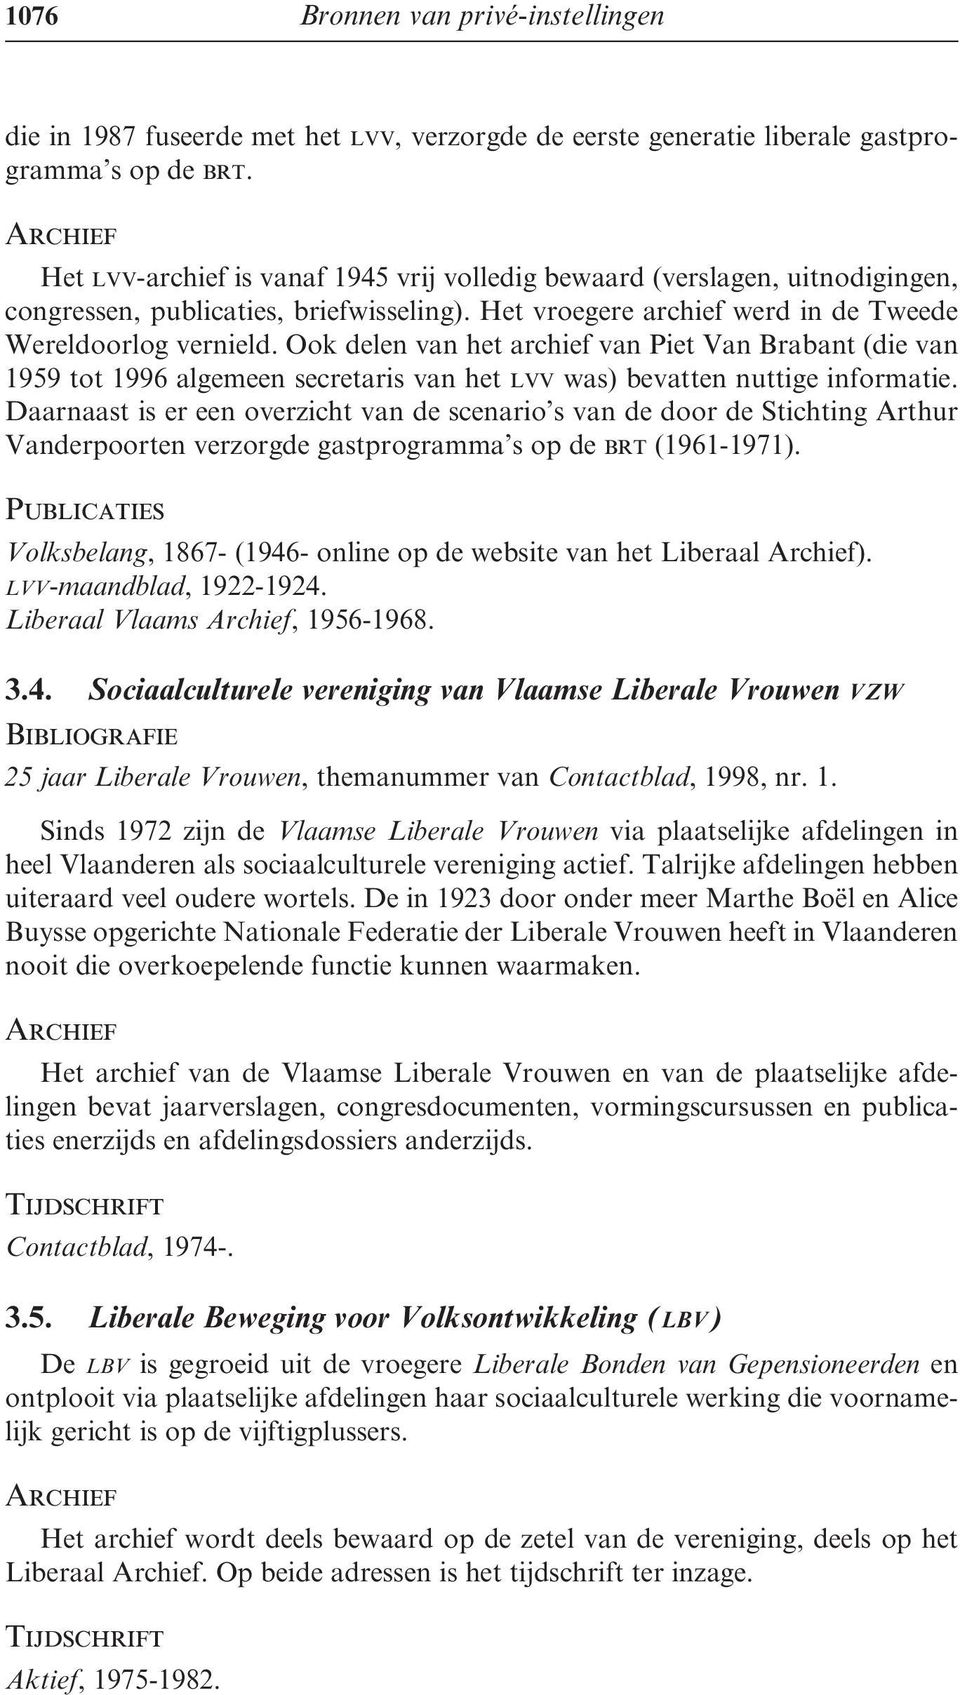 Ook delen van het archief van Piet Van Brabant (die van 1959 tot 1996 algemeen secretaris van het lvv was) bevatten nuttige informatie.